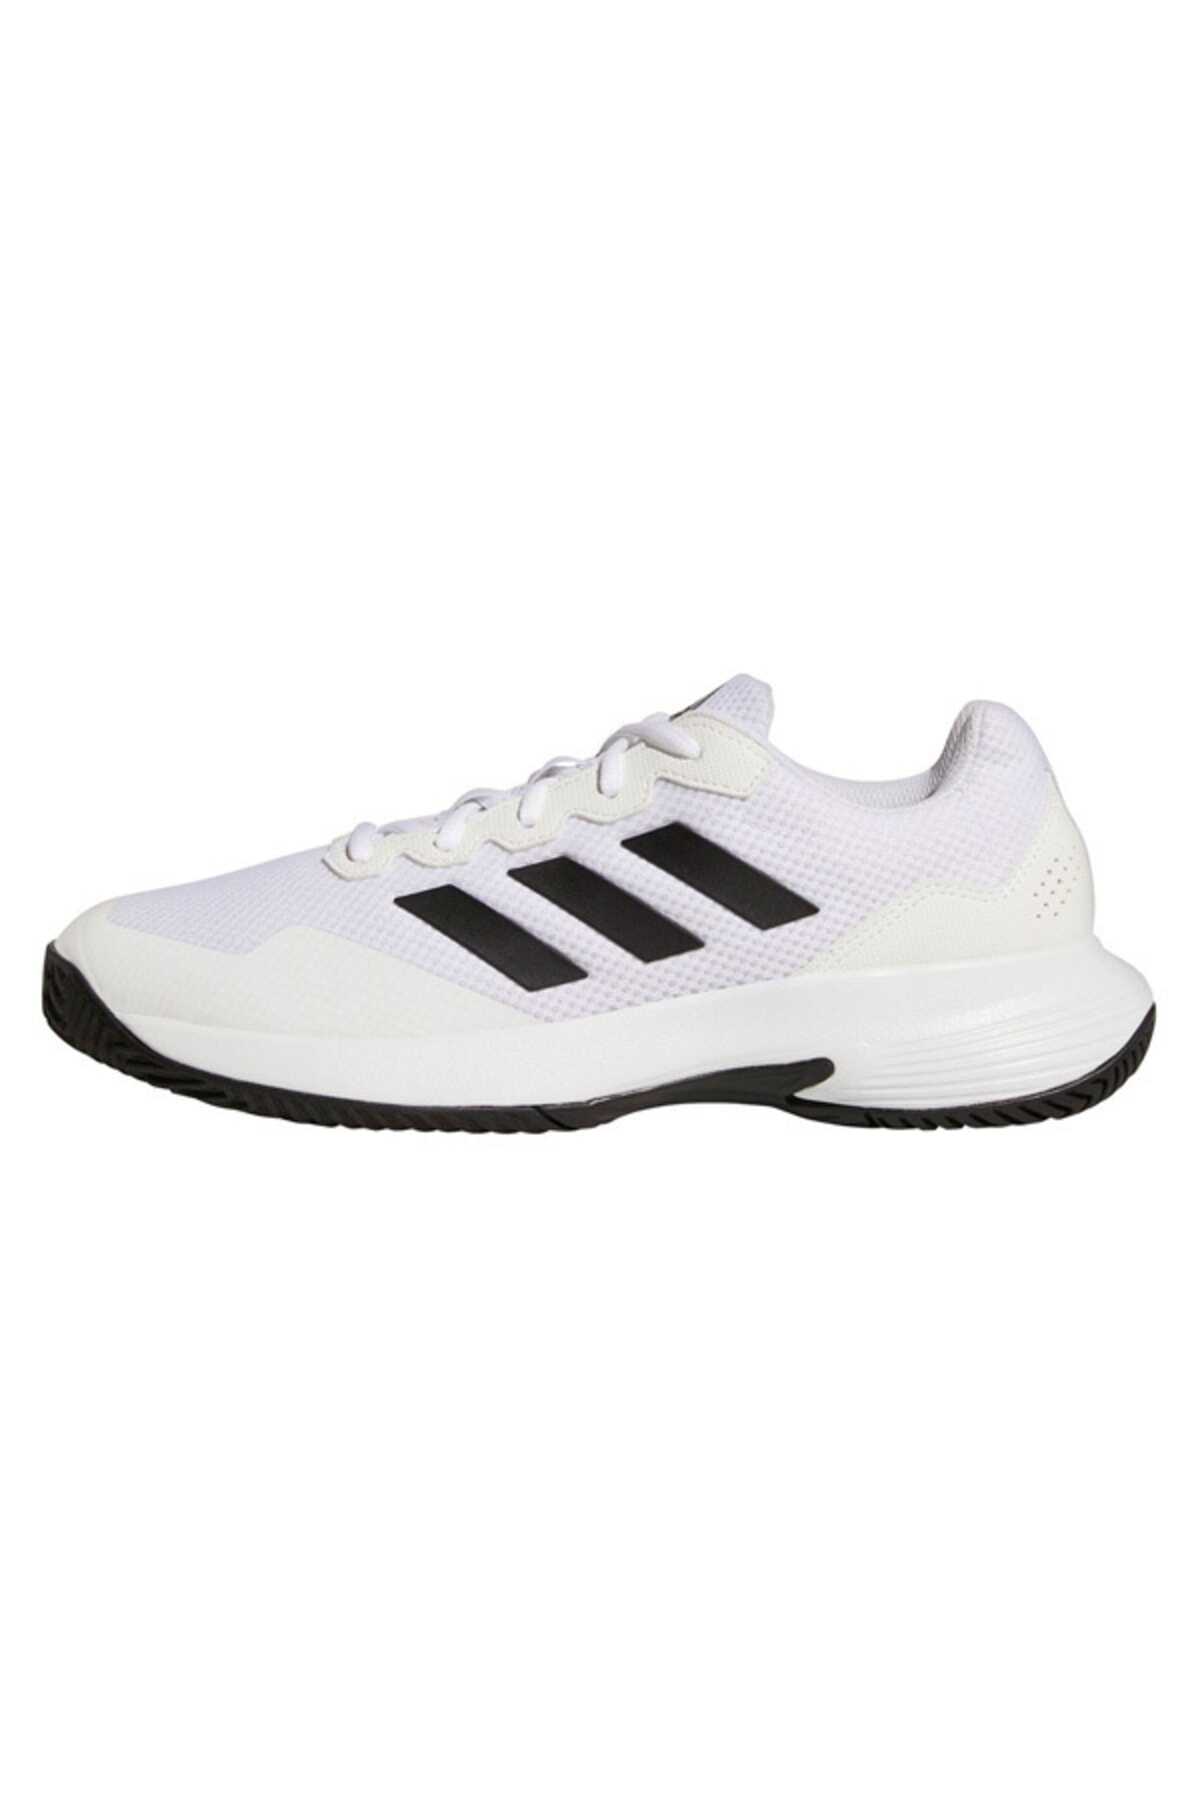 کفش تنیس مردانه سفید برند adidas 